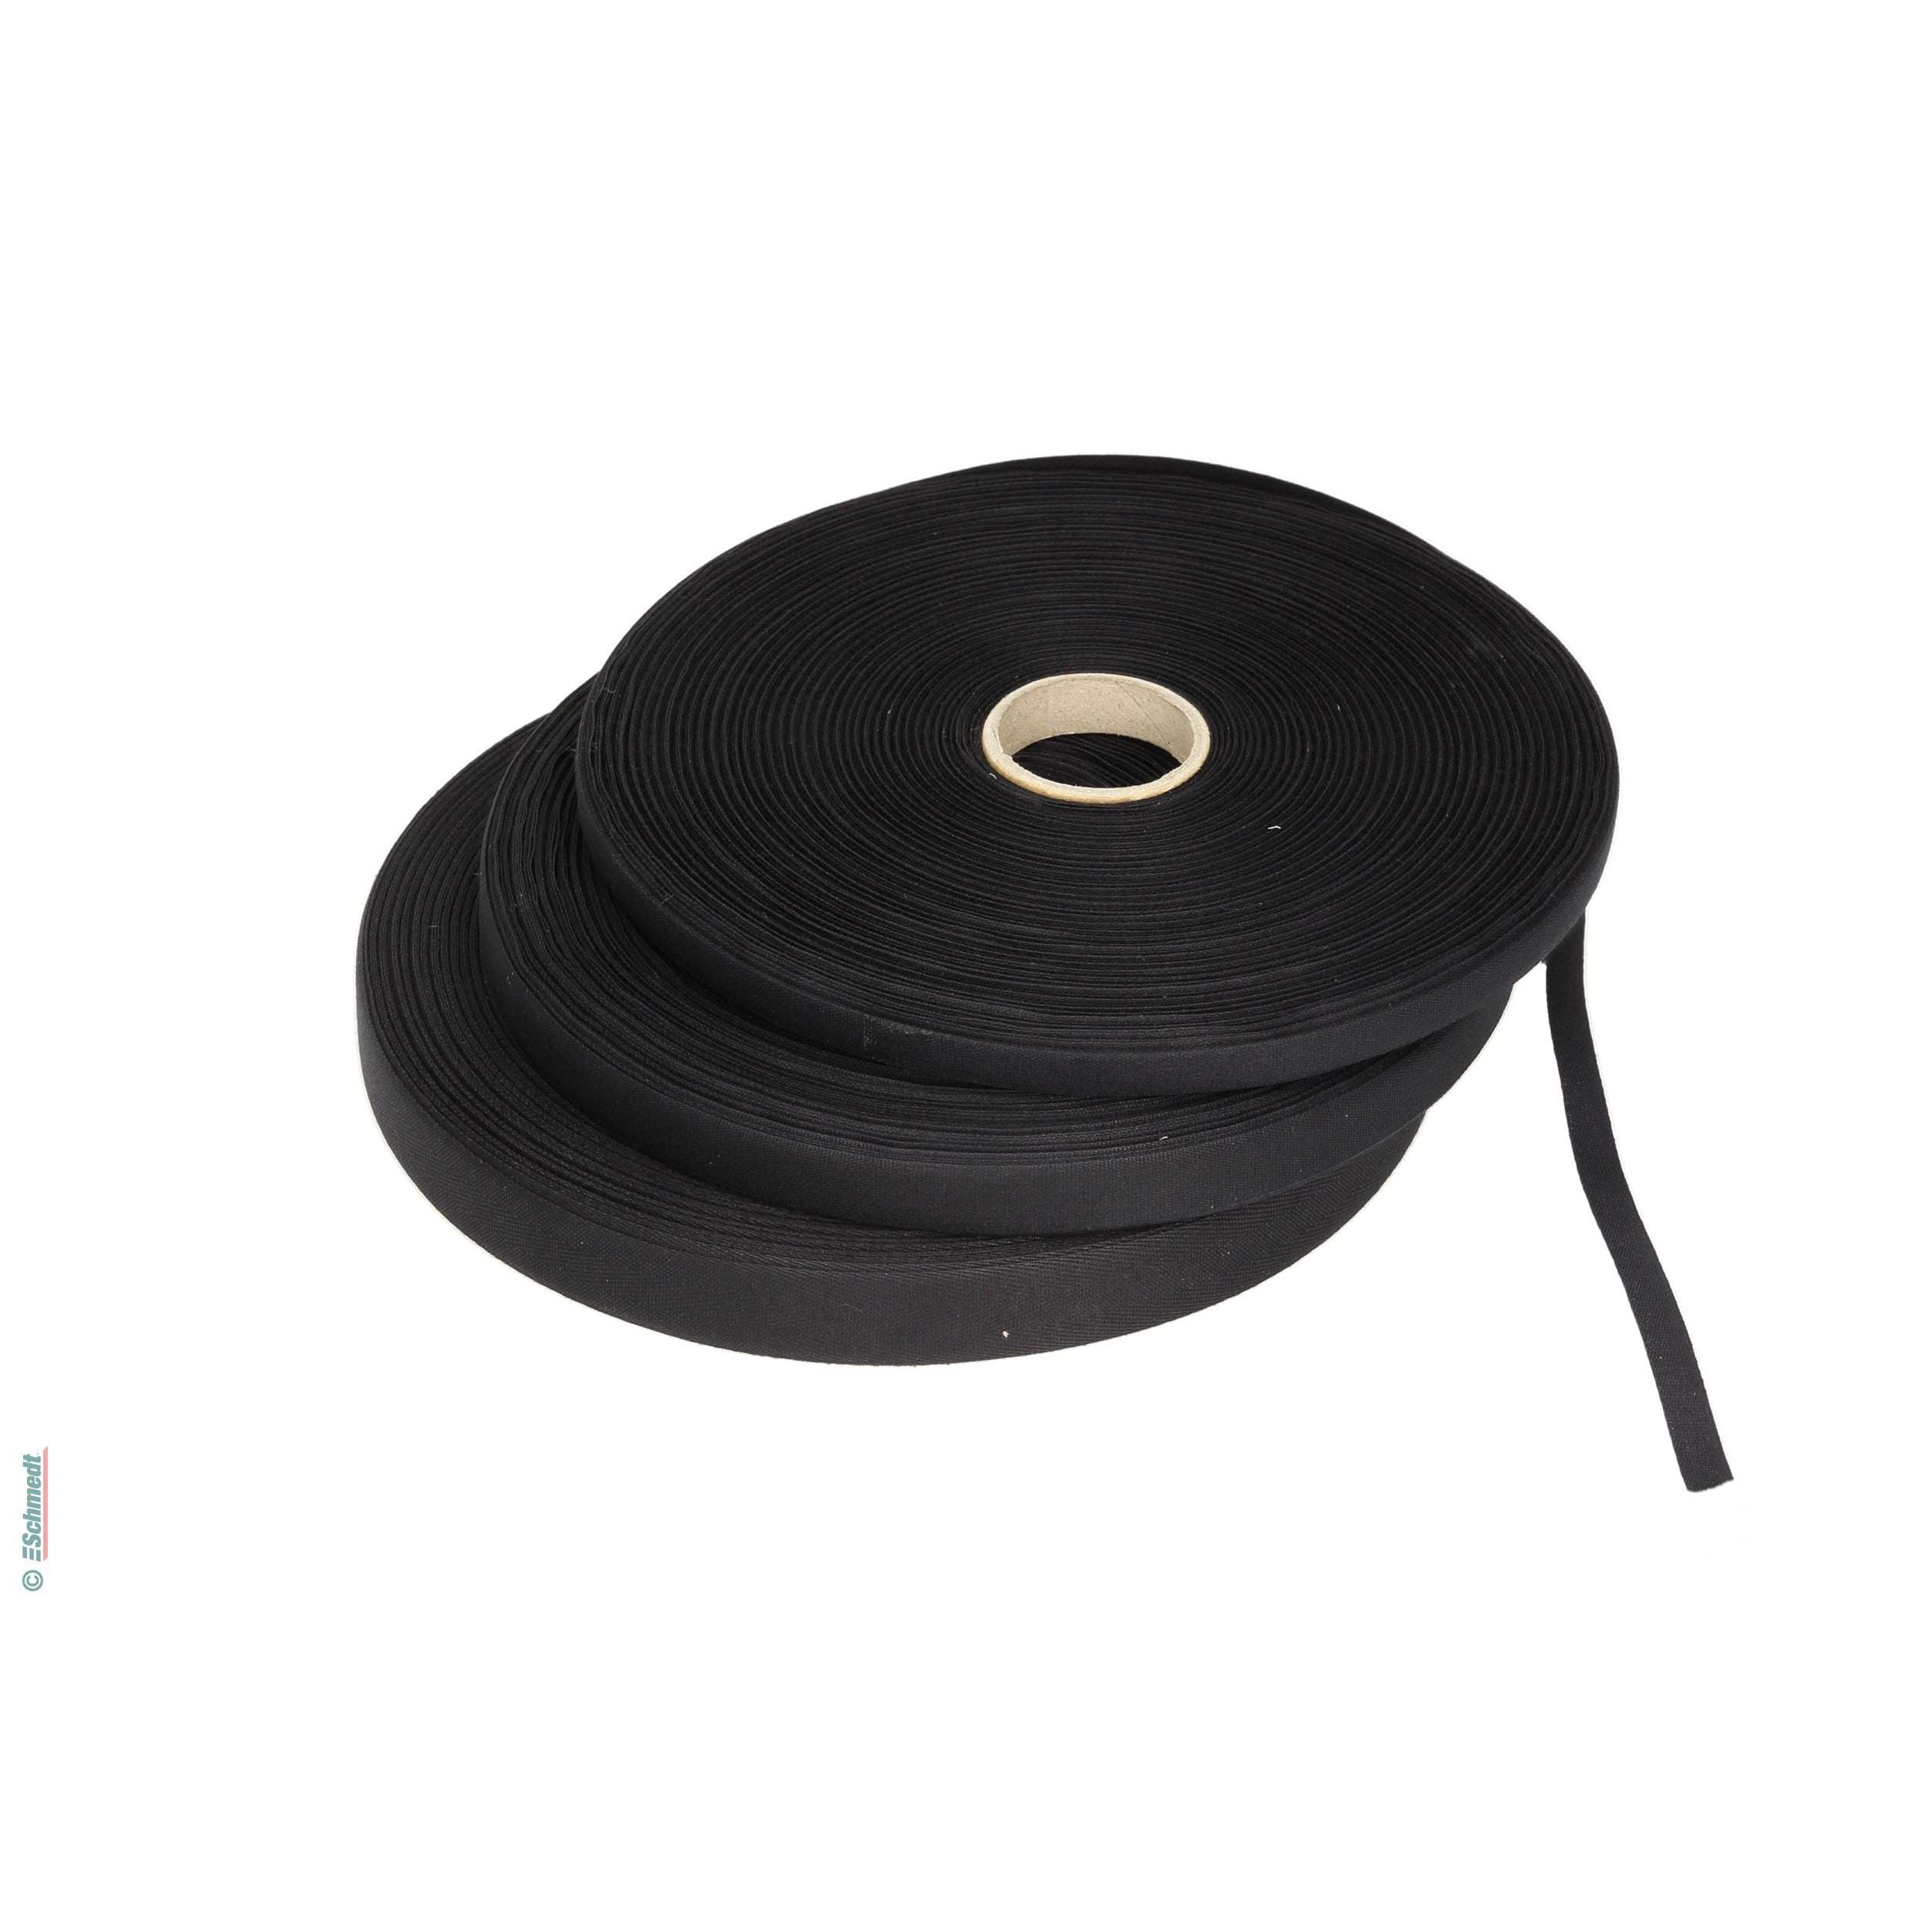 Cinta para carpetas - cinta fina de hilo - Anchura (en mm) 15 - Color negro - para cerrar carpetas y libros...